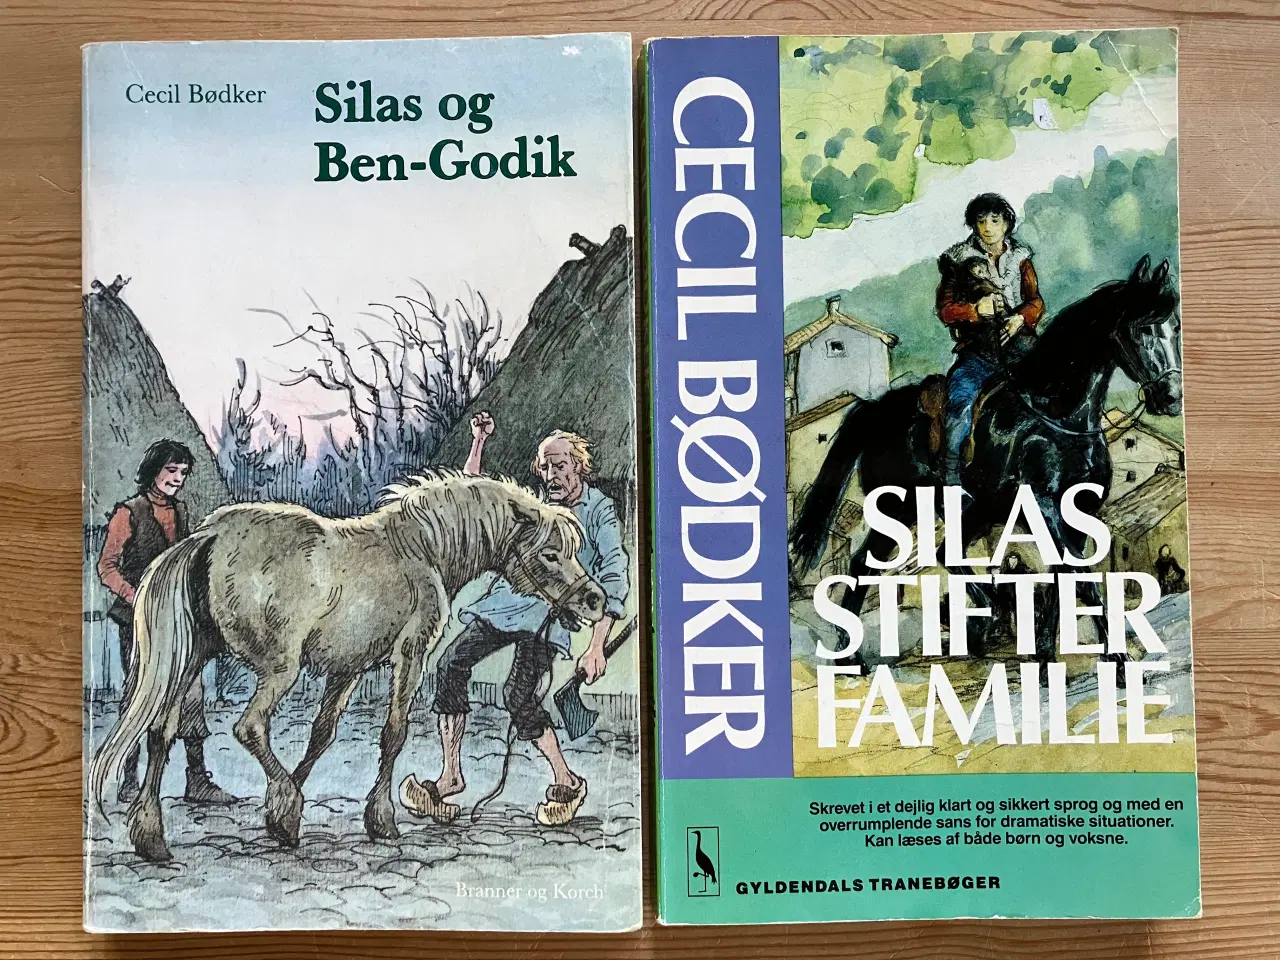 Billede 2 - 8 Silas bøger, af Cecil Bødker